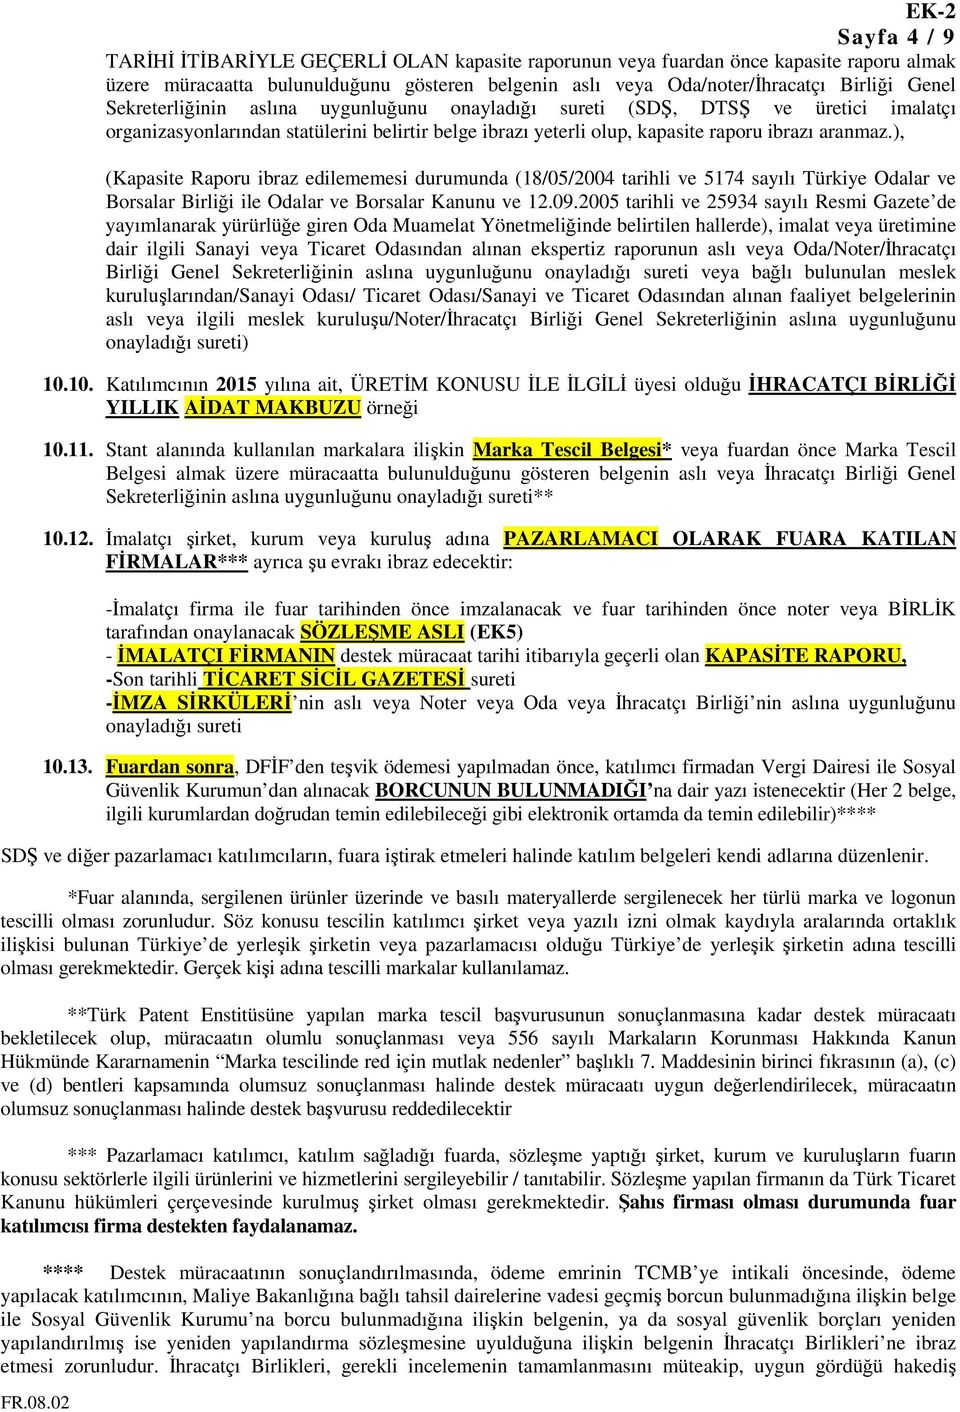 ), (Kapasite Raporu ibraz edilememesi durumunda (18/05/2004 tarihli ve 5174 sayılı Türkiye Odalar ve Borsalar Birliği ile Odalar ve Borsalar Kanunu ve 12.09.